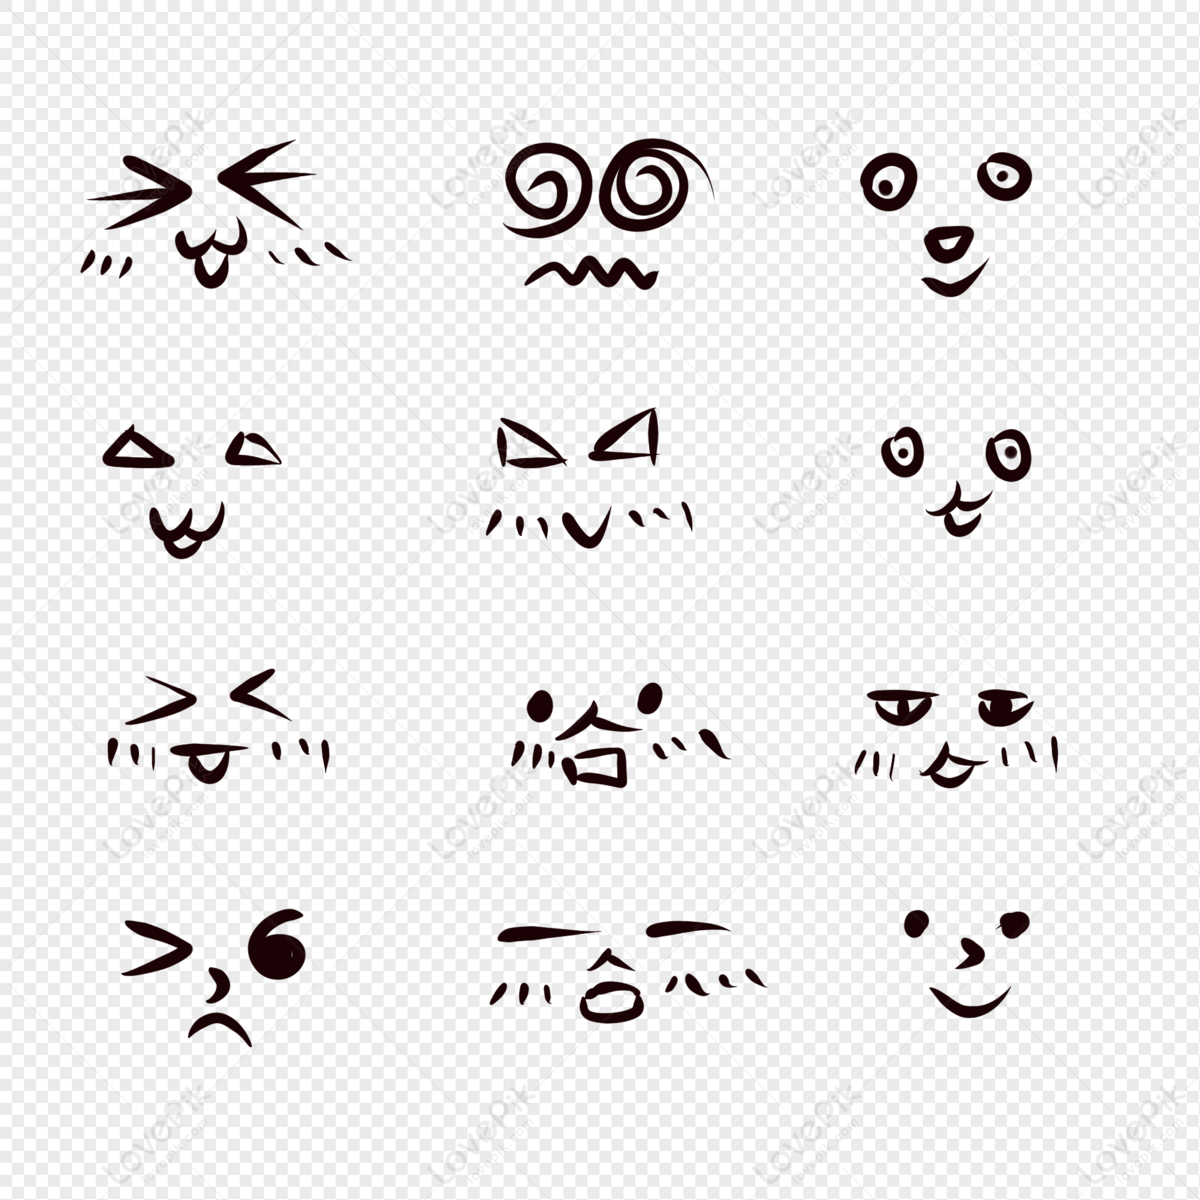 Emoticon: Hình tượng biểu cảm ngộ nghĩnh nhưng cũng thể hiện được nhiều cảm xúc, nếu bạn đang cần một chút niềm vui và màu sắc thì hãy xem ngay hình ảnh liên quan đến emoticon này.